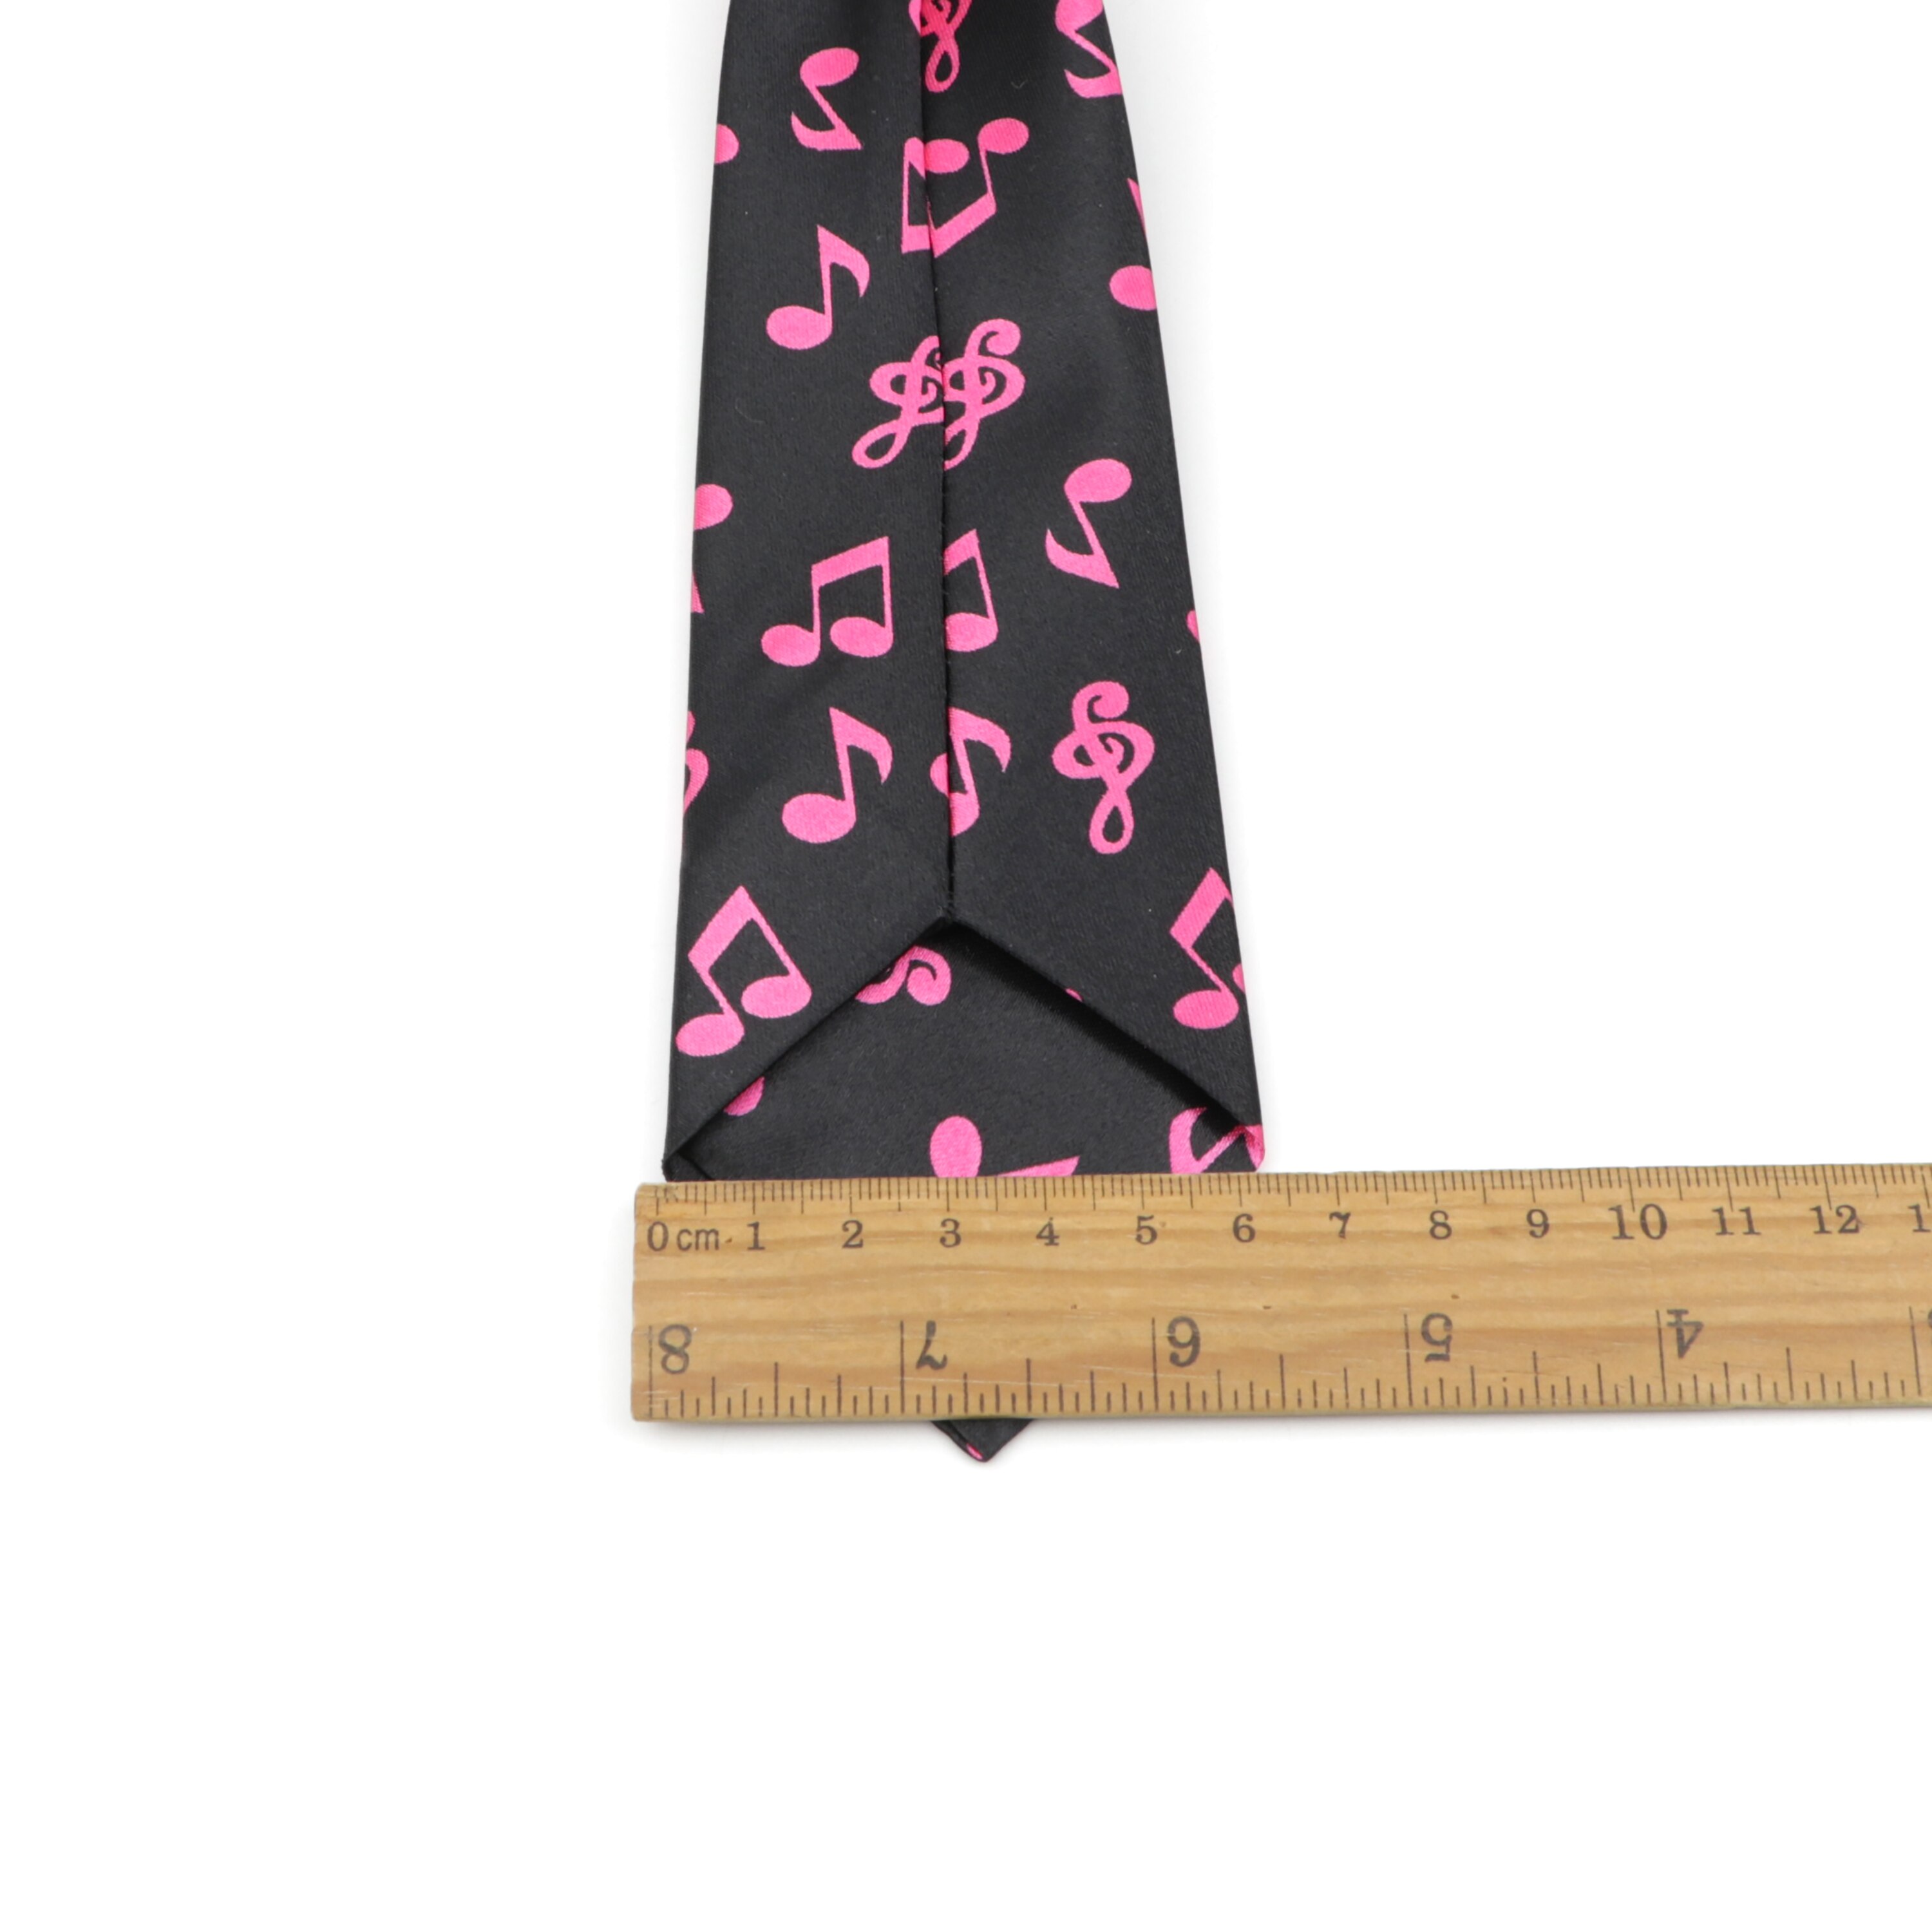 Børn slank størrelse slips børn 2.2 tommer brudgomskort musik fisk smalle dovne slips fest polyester gravata baby slips elastikbånd